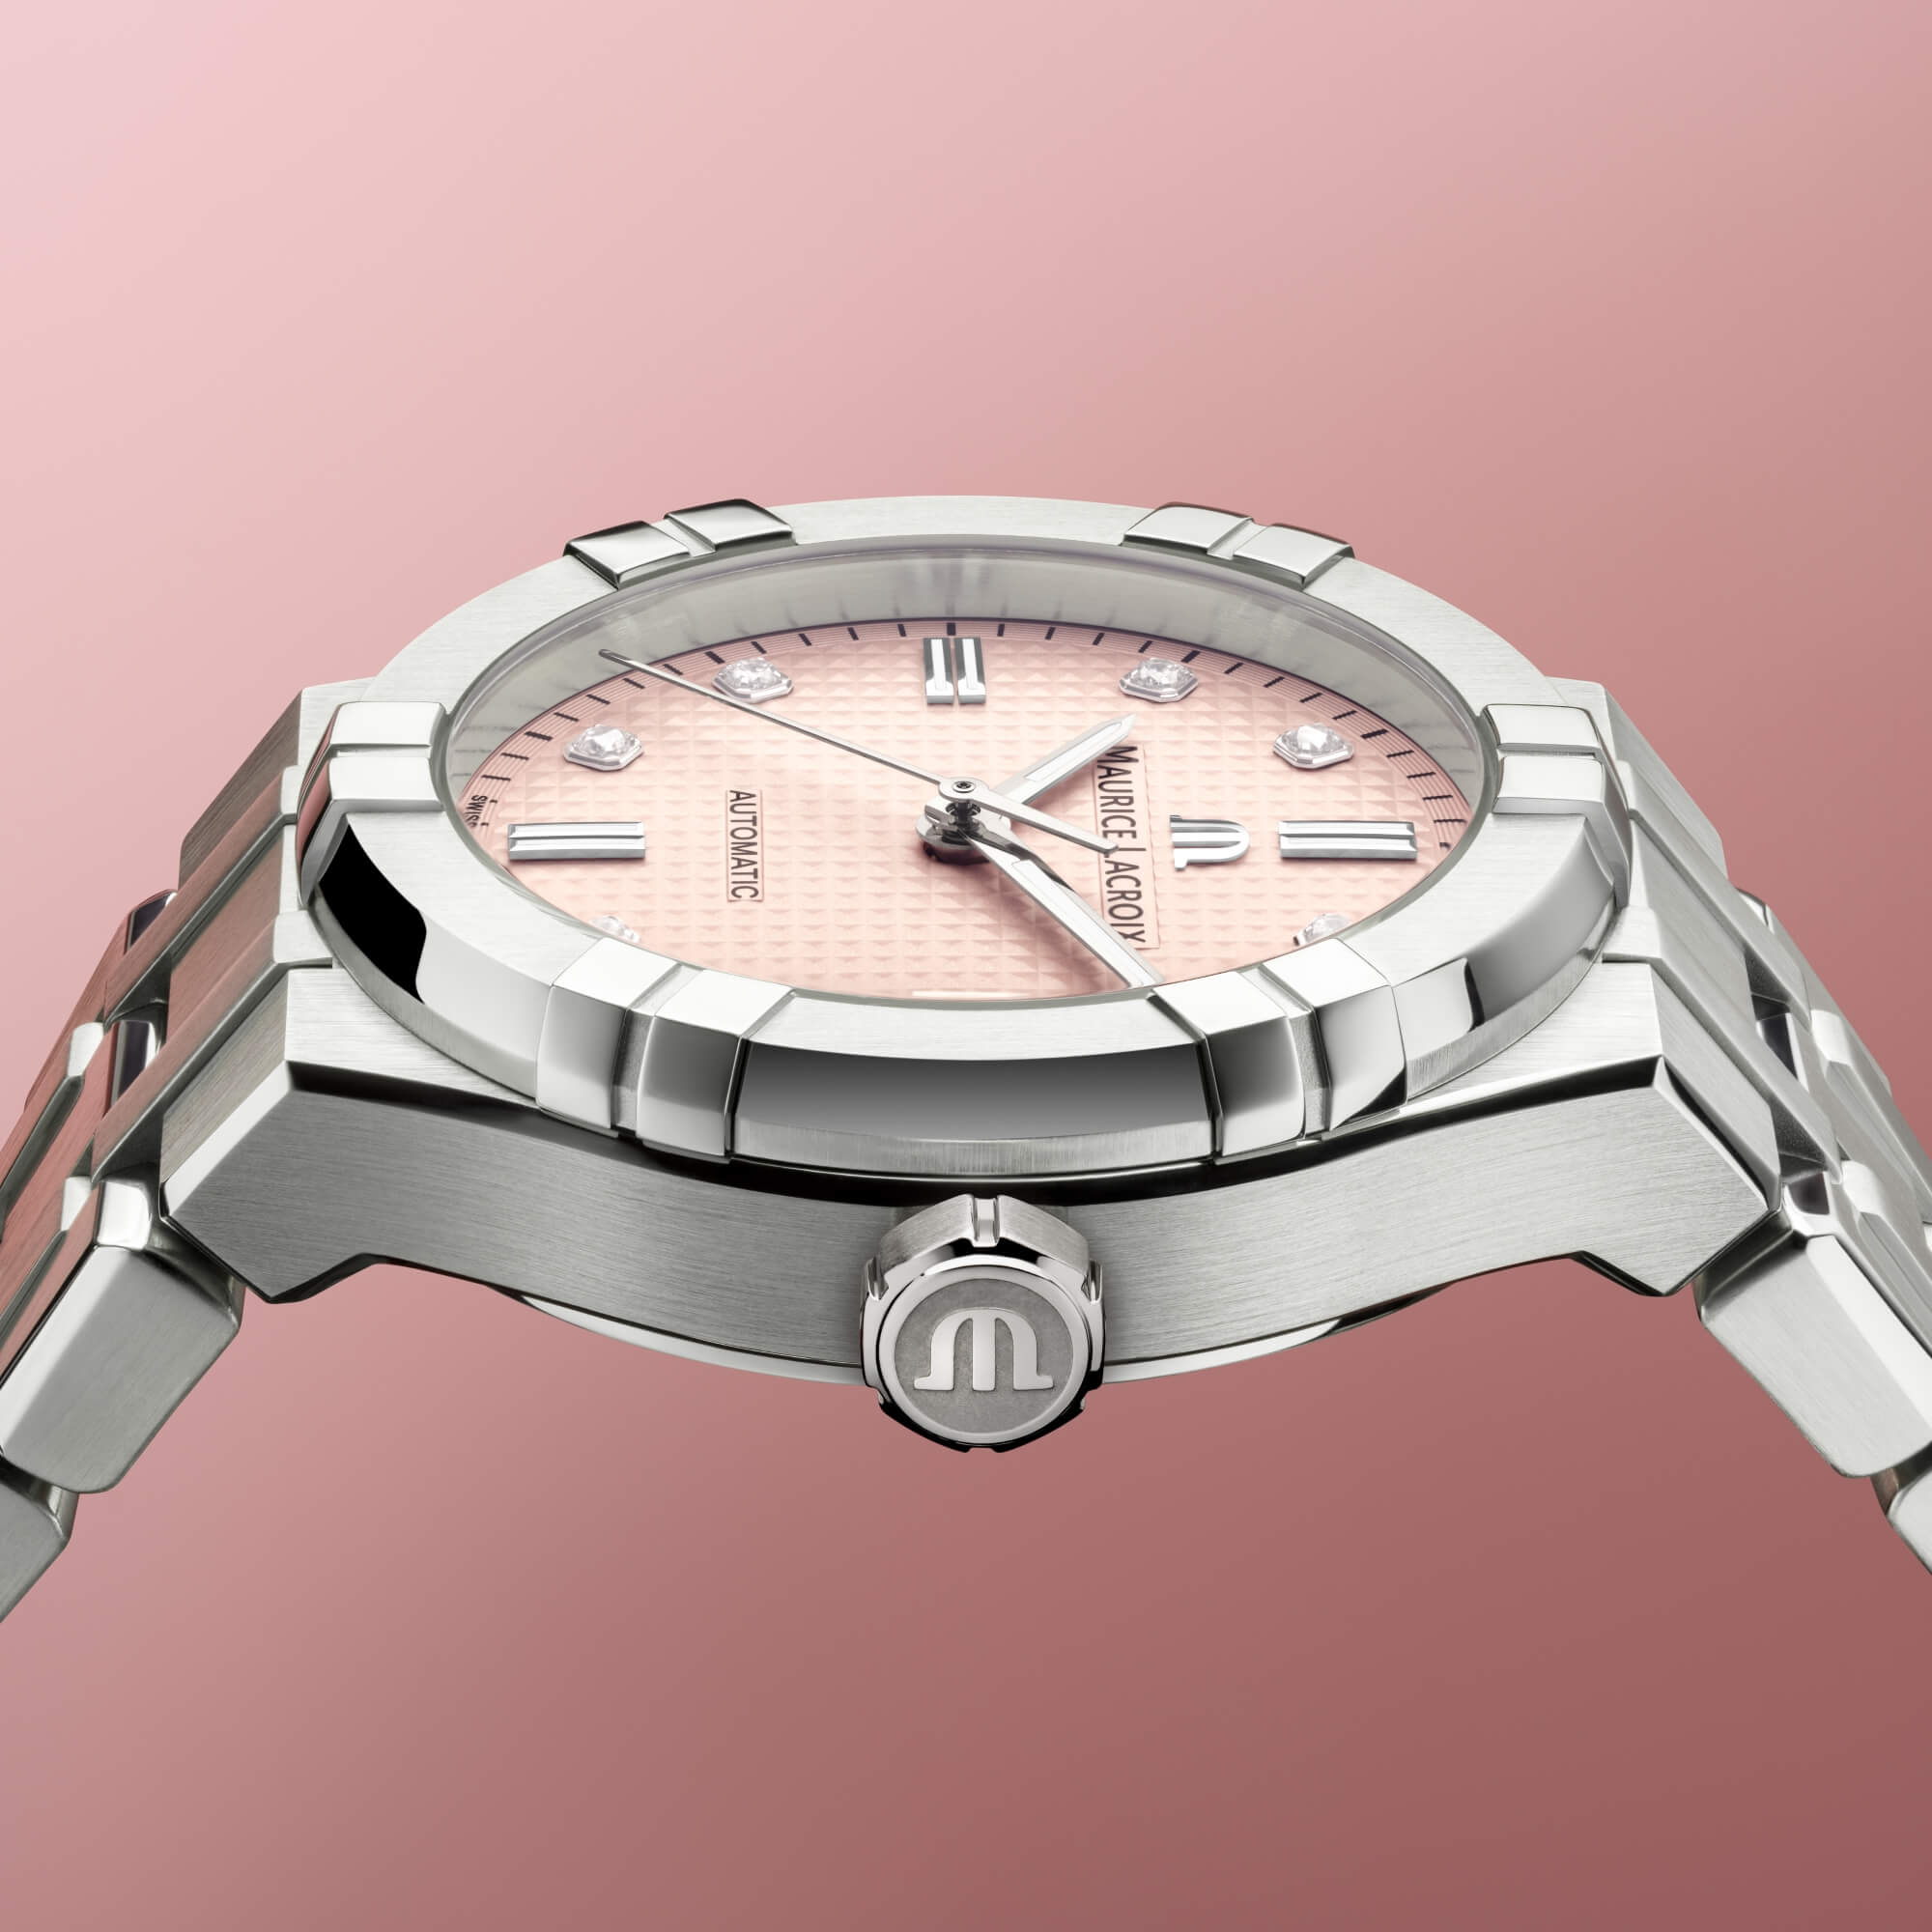 Новинка: автоматические часы Maurice Lacroix Aikon Summer Edition, выпущенные ограниченным тиражом